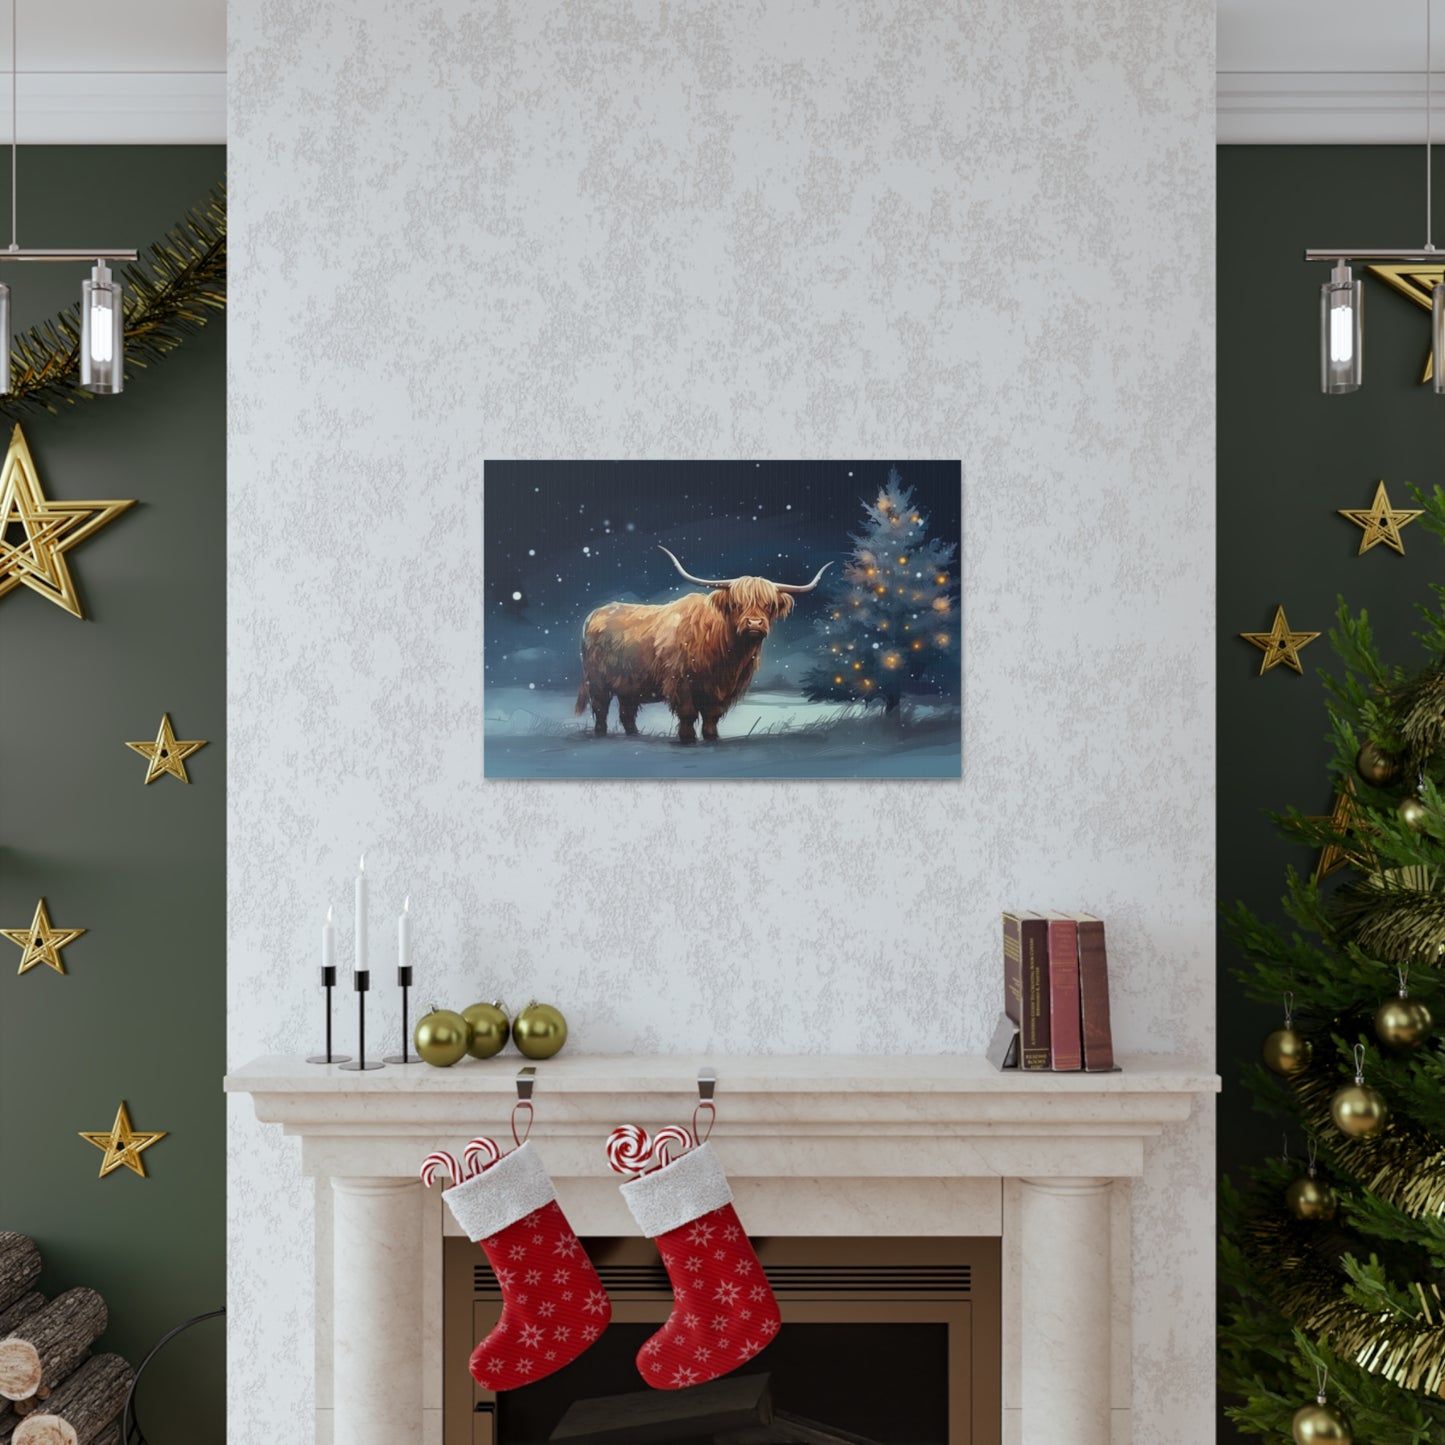 A Highland Cow Christmas